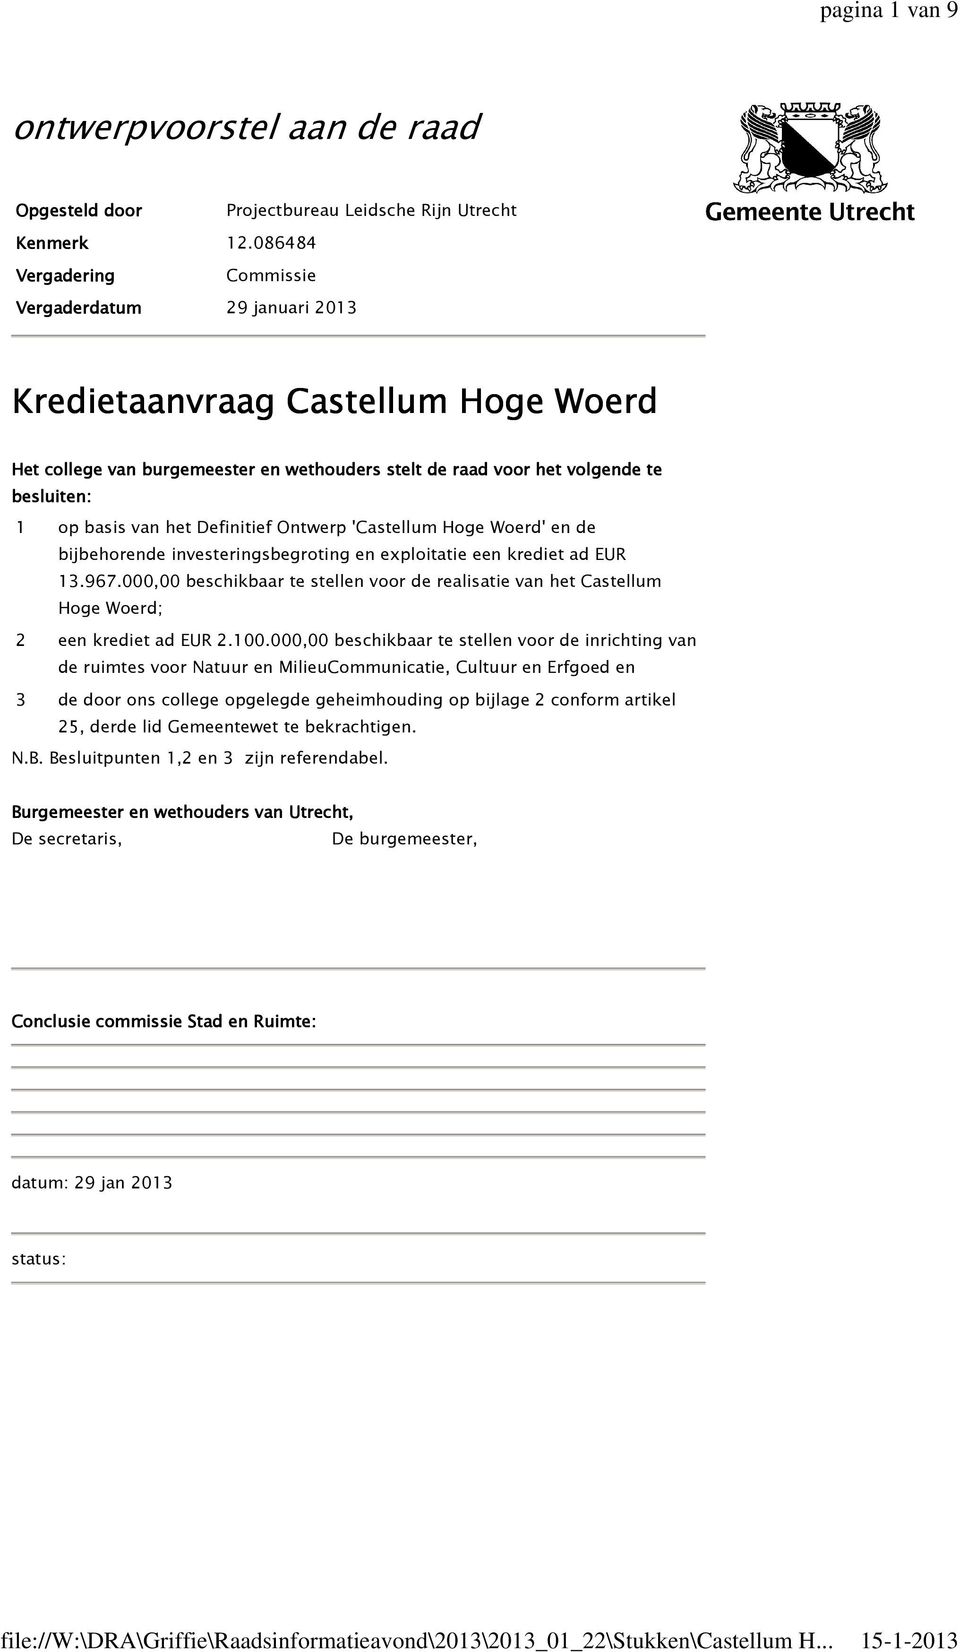 000,00 beschikbaar te stellenvoor de realisatie van het Castellum Hoge Woerd; 2 een kredietad EUR2.100.